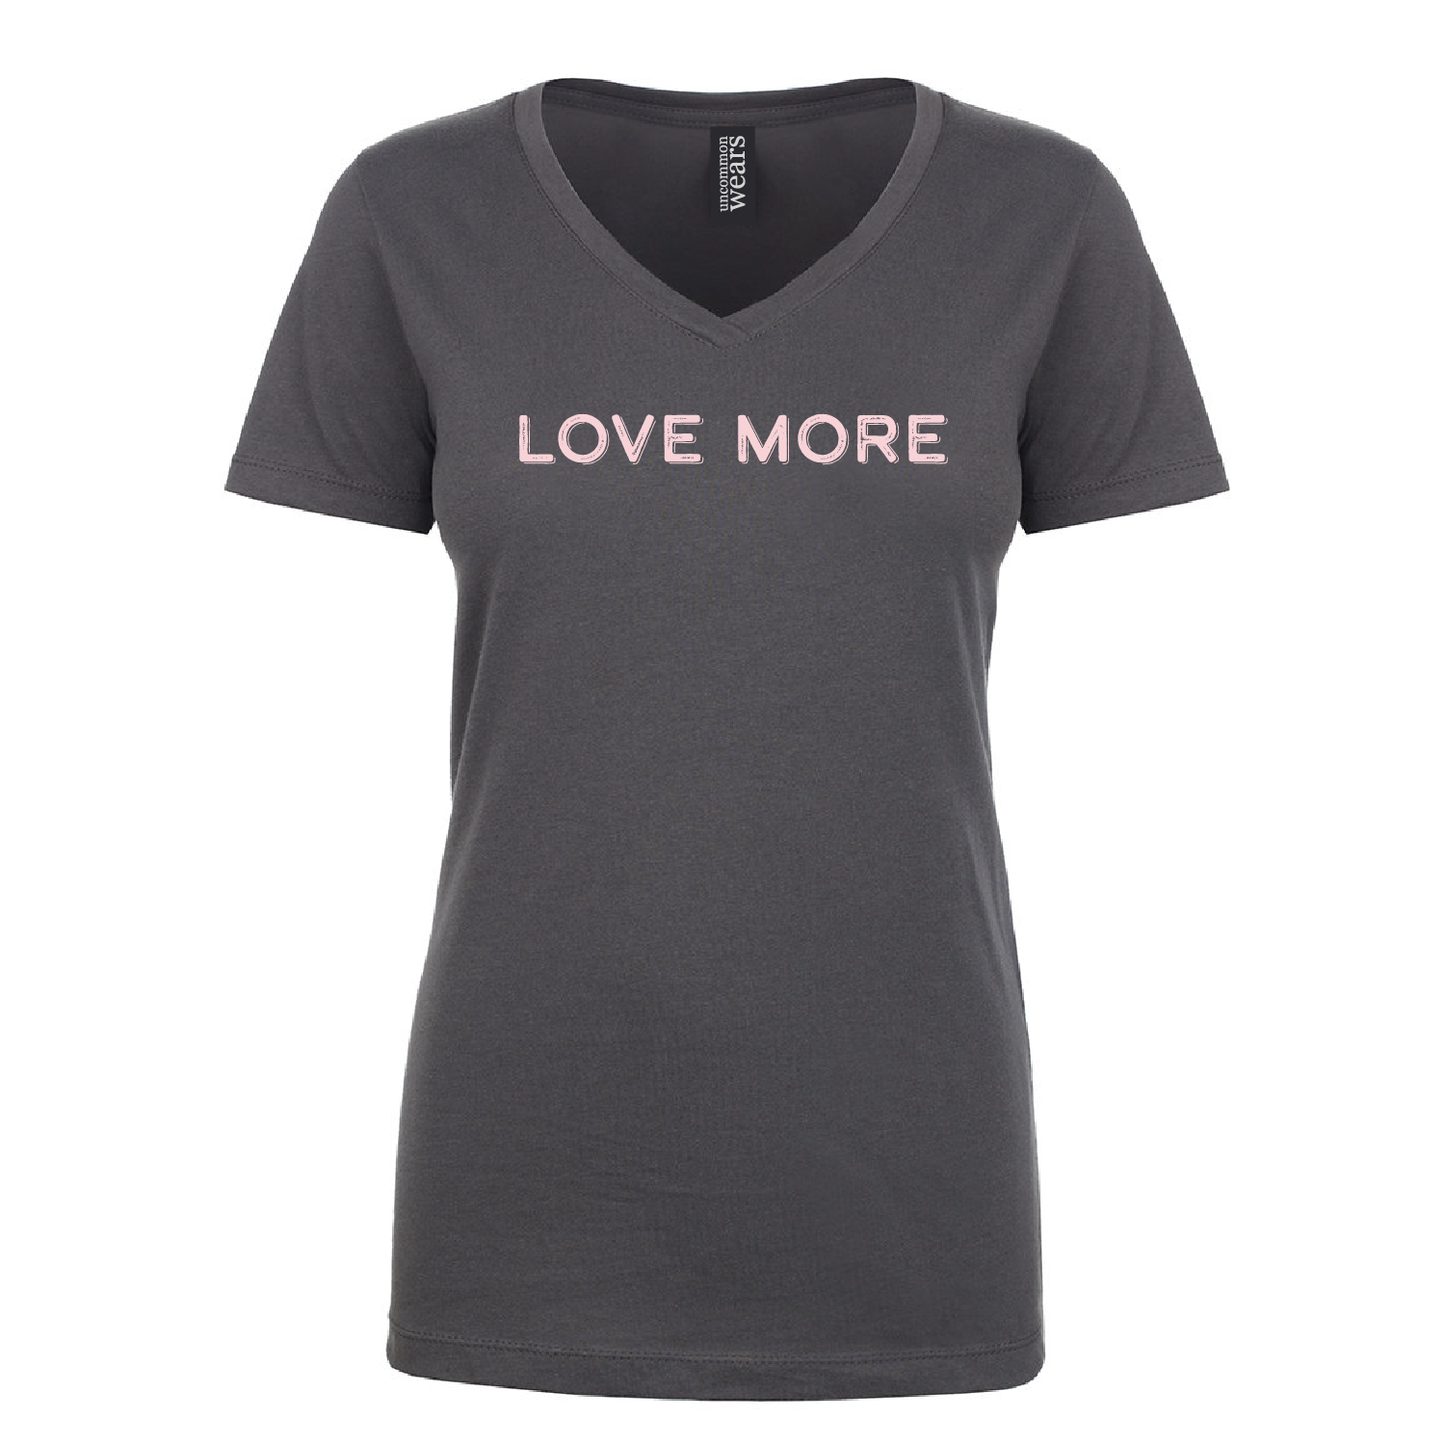 Love More Dark Gray T-Shirt - 072